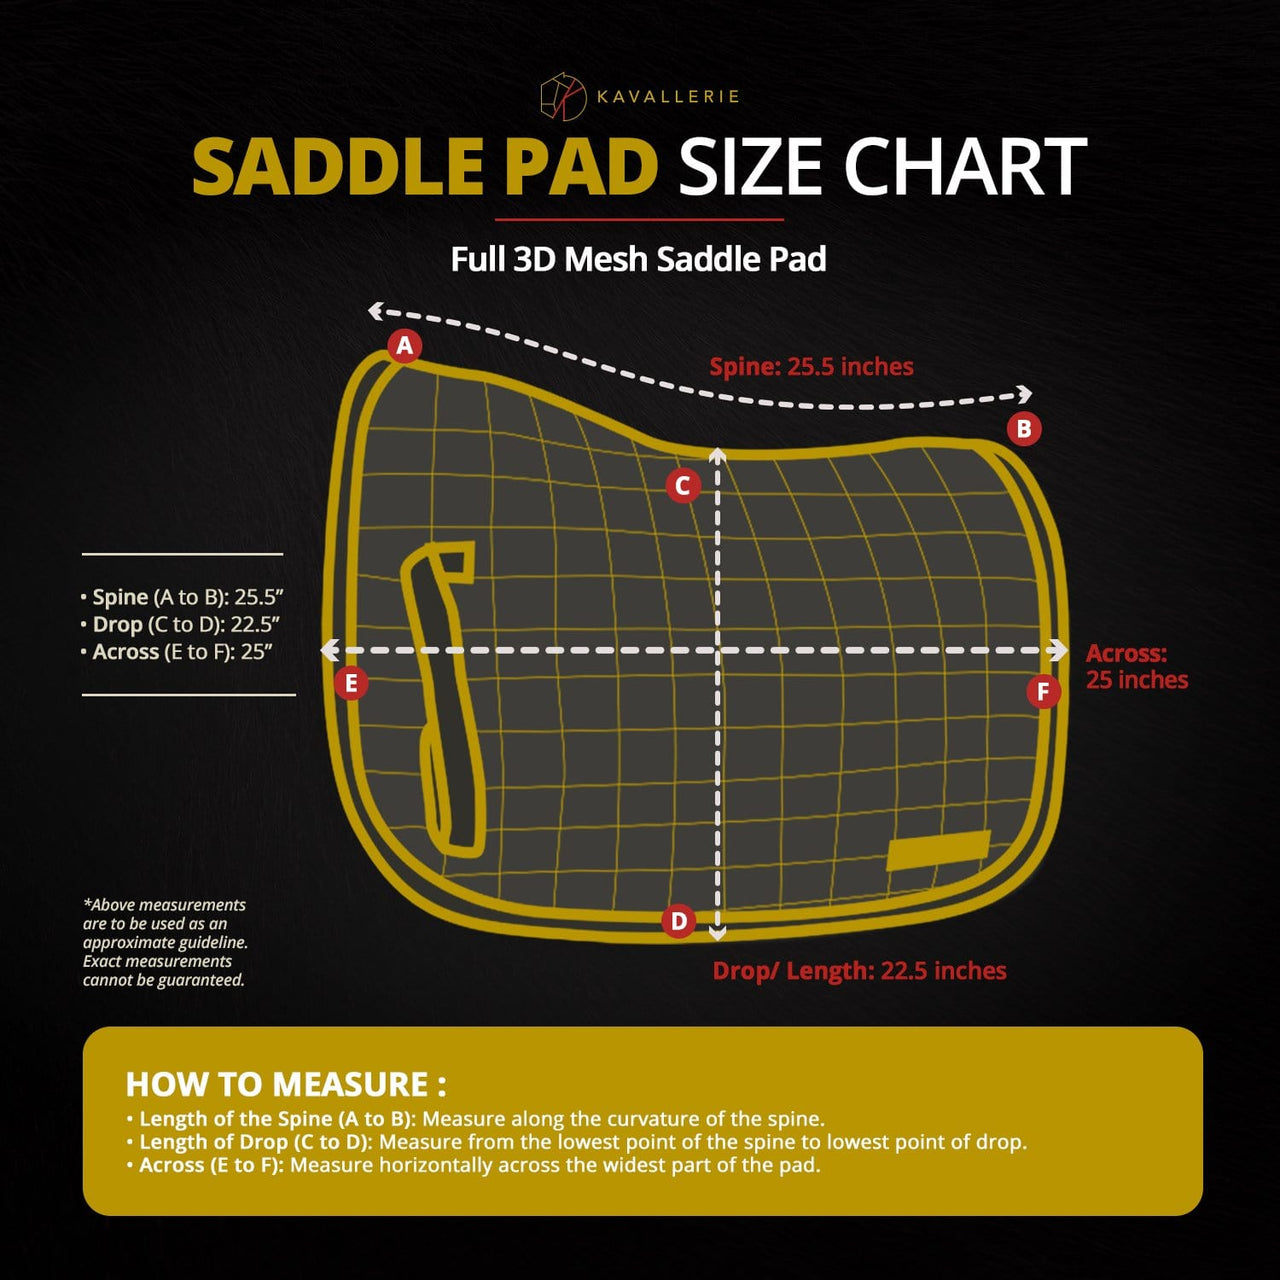 Full 3D Mesh Saddle Pad - Kavallerie